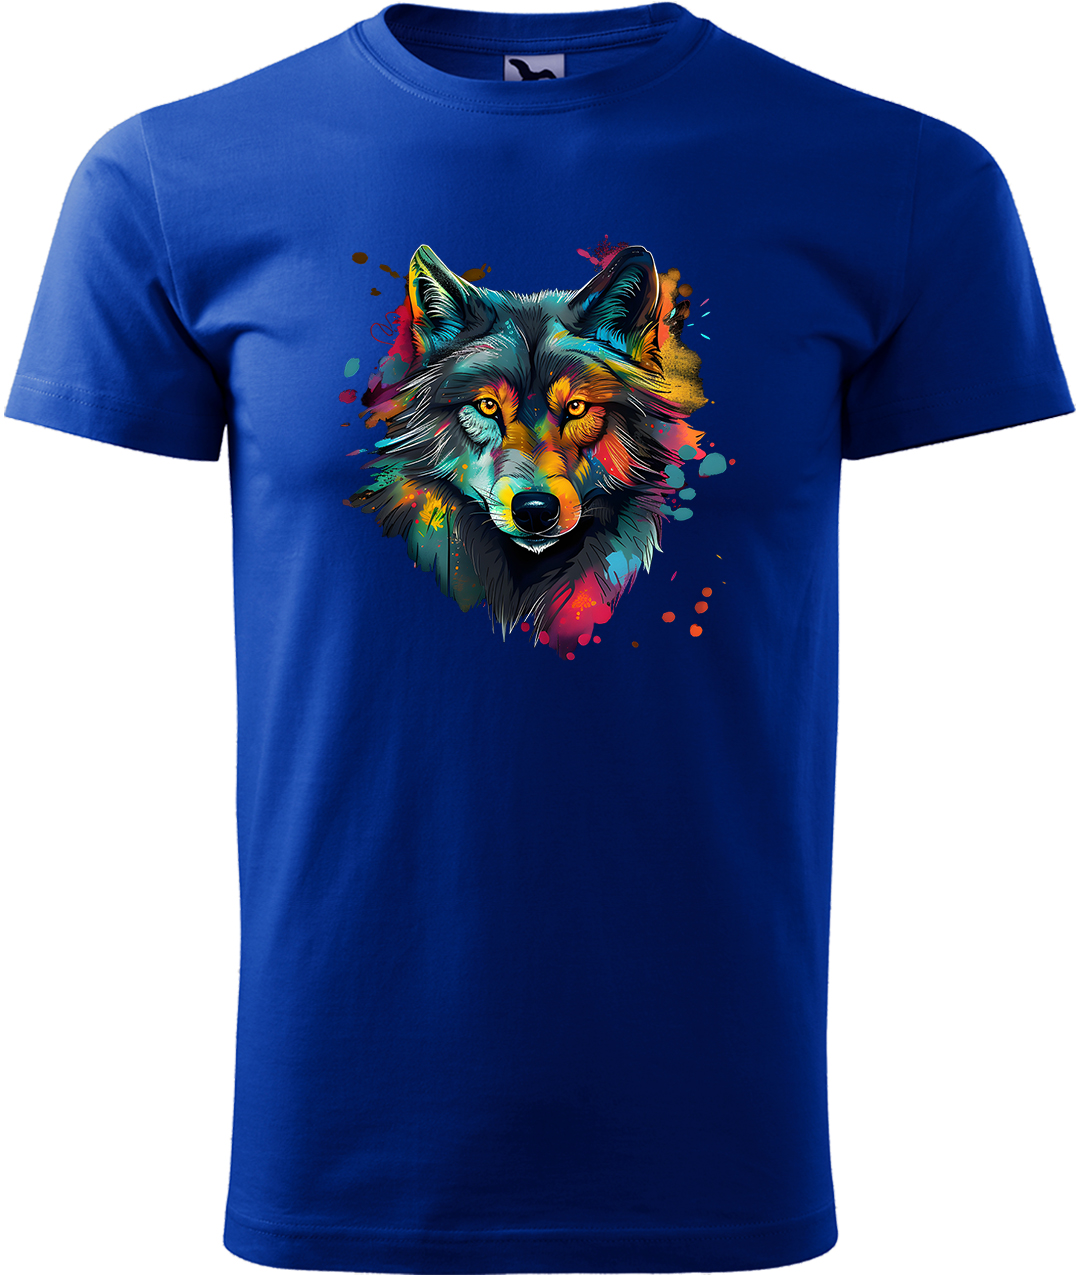 Pánské tričko s vlkem - Malovaný vlk Velikost: M, Barva: Královská modrá (05), Střih: pánský